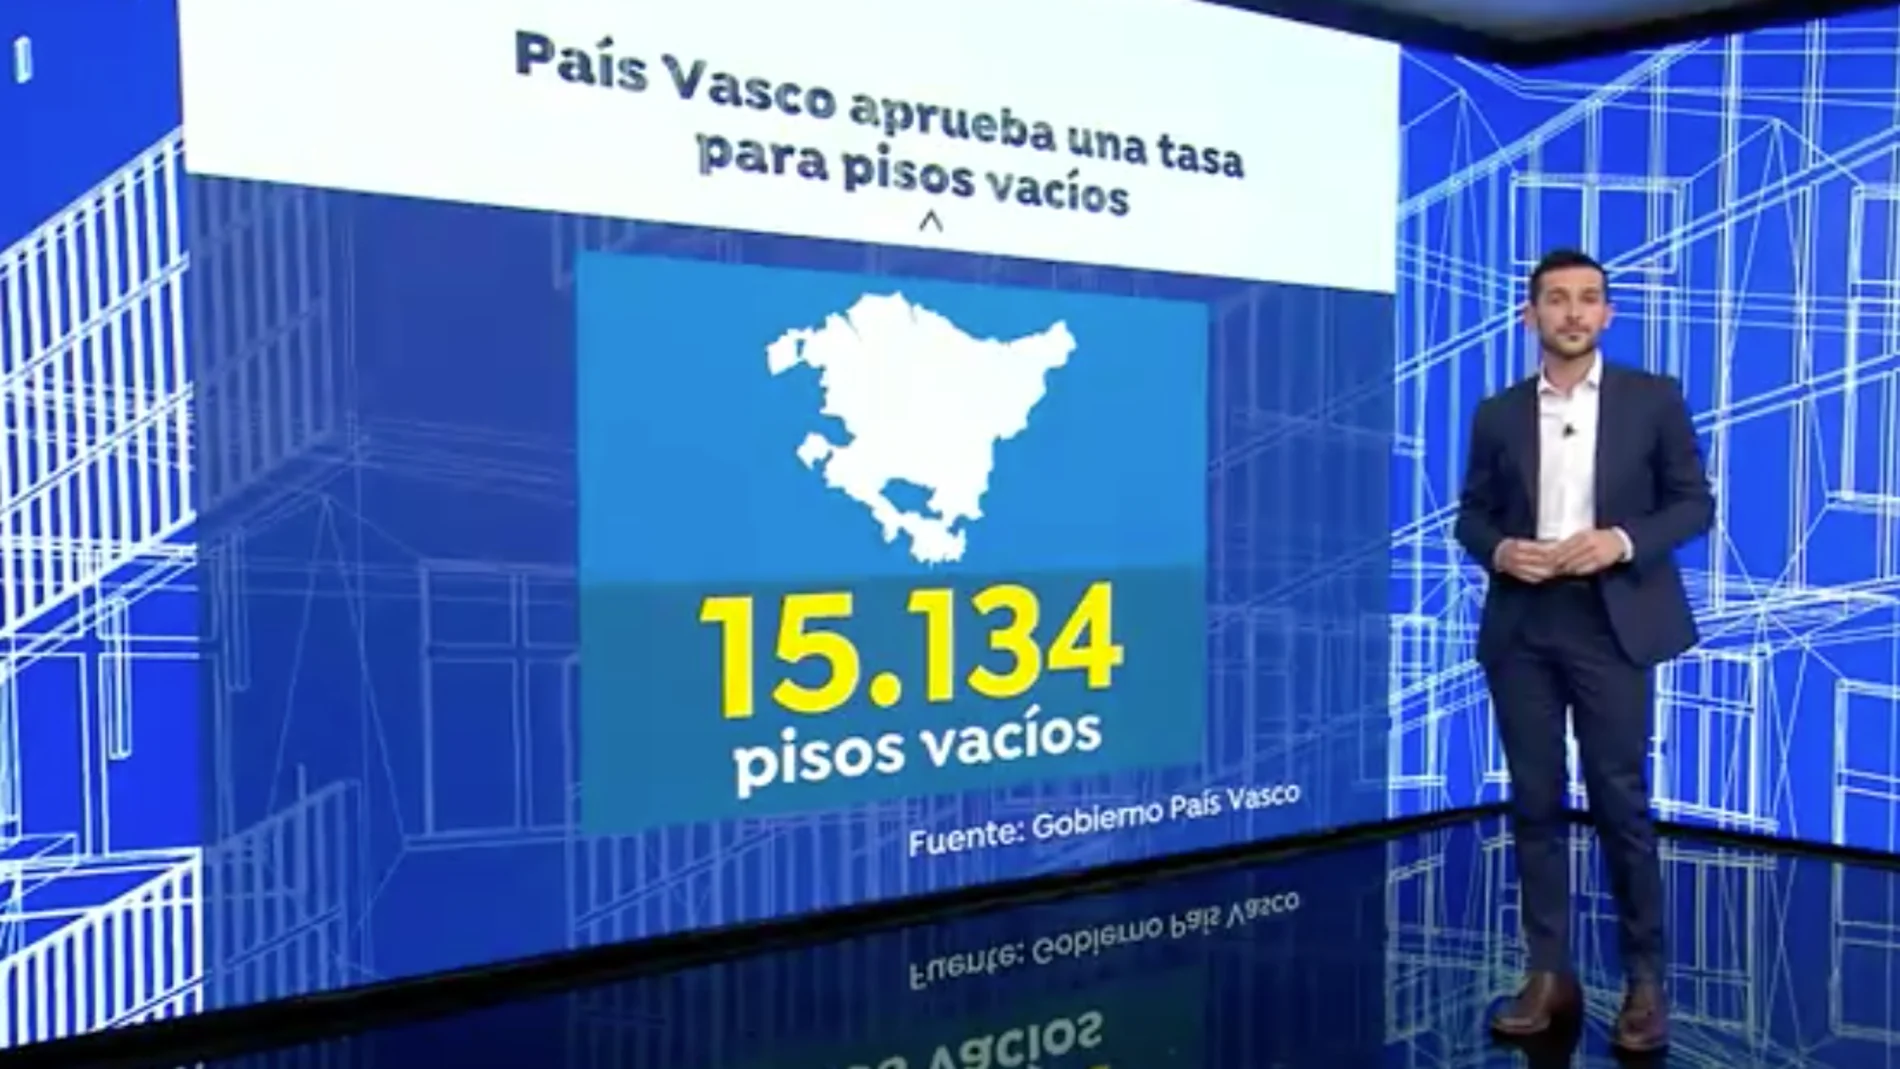 Tasa a los pisos vacíos en el País Vasco